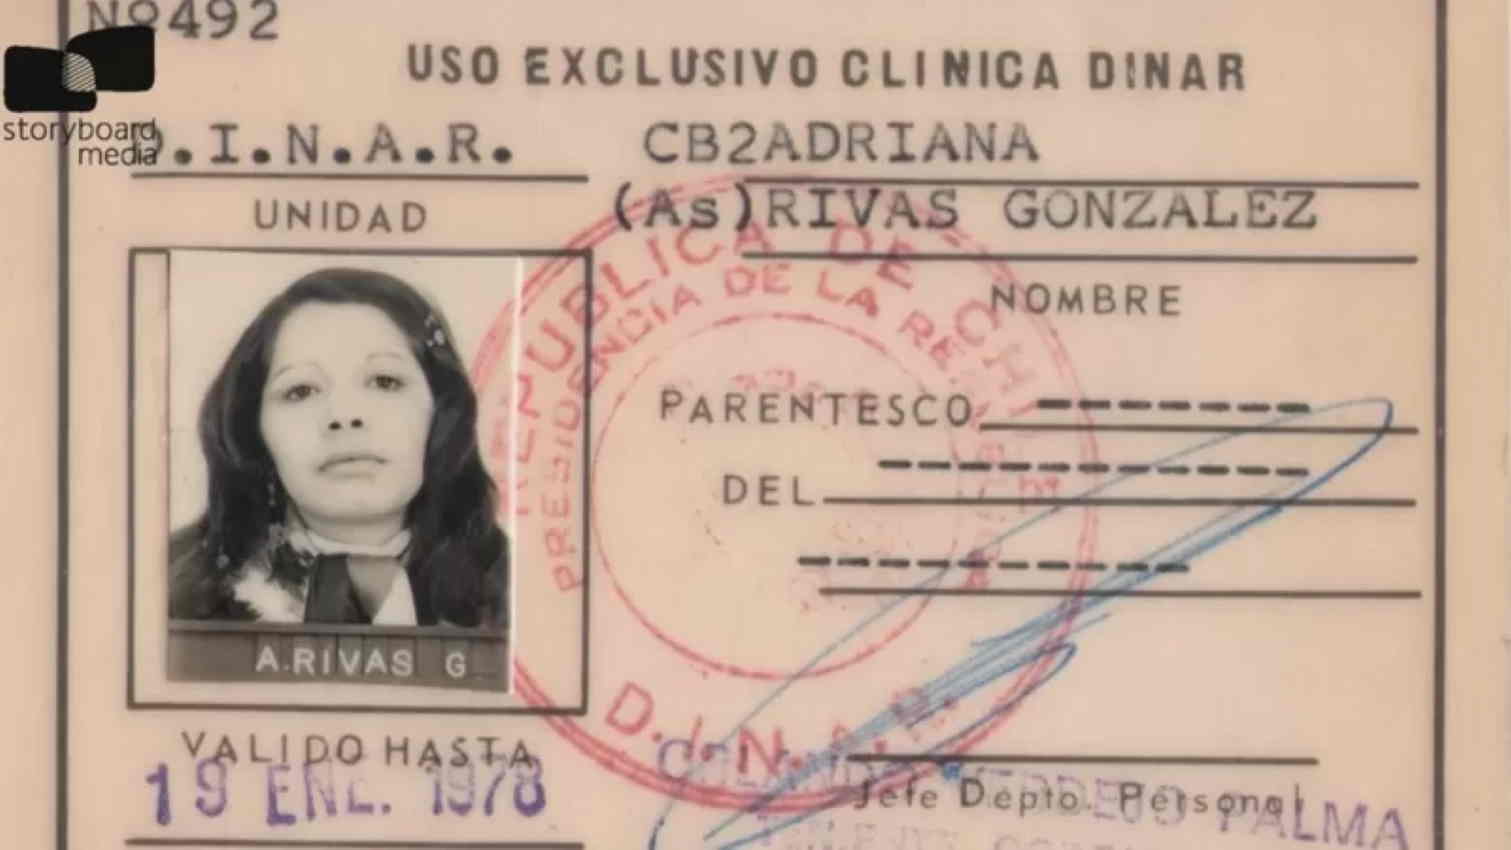 El carnet de Adriana Rivas como miembro de la DINA de la dictadura chilena